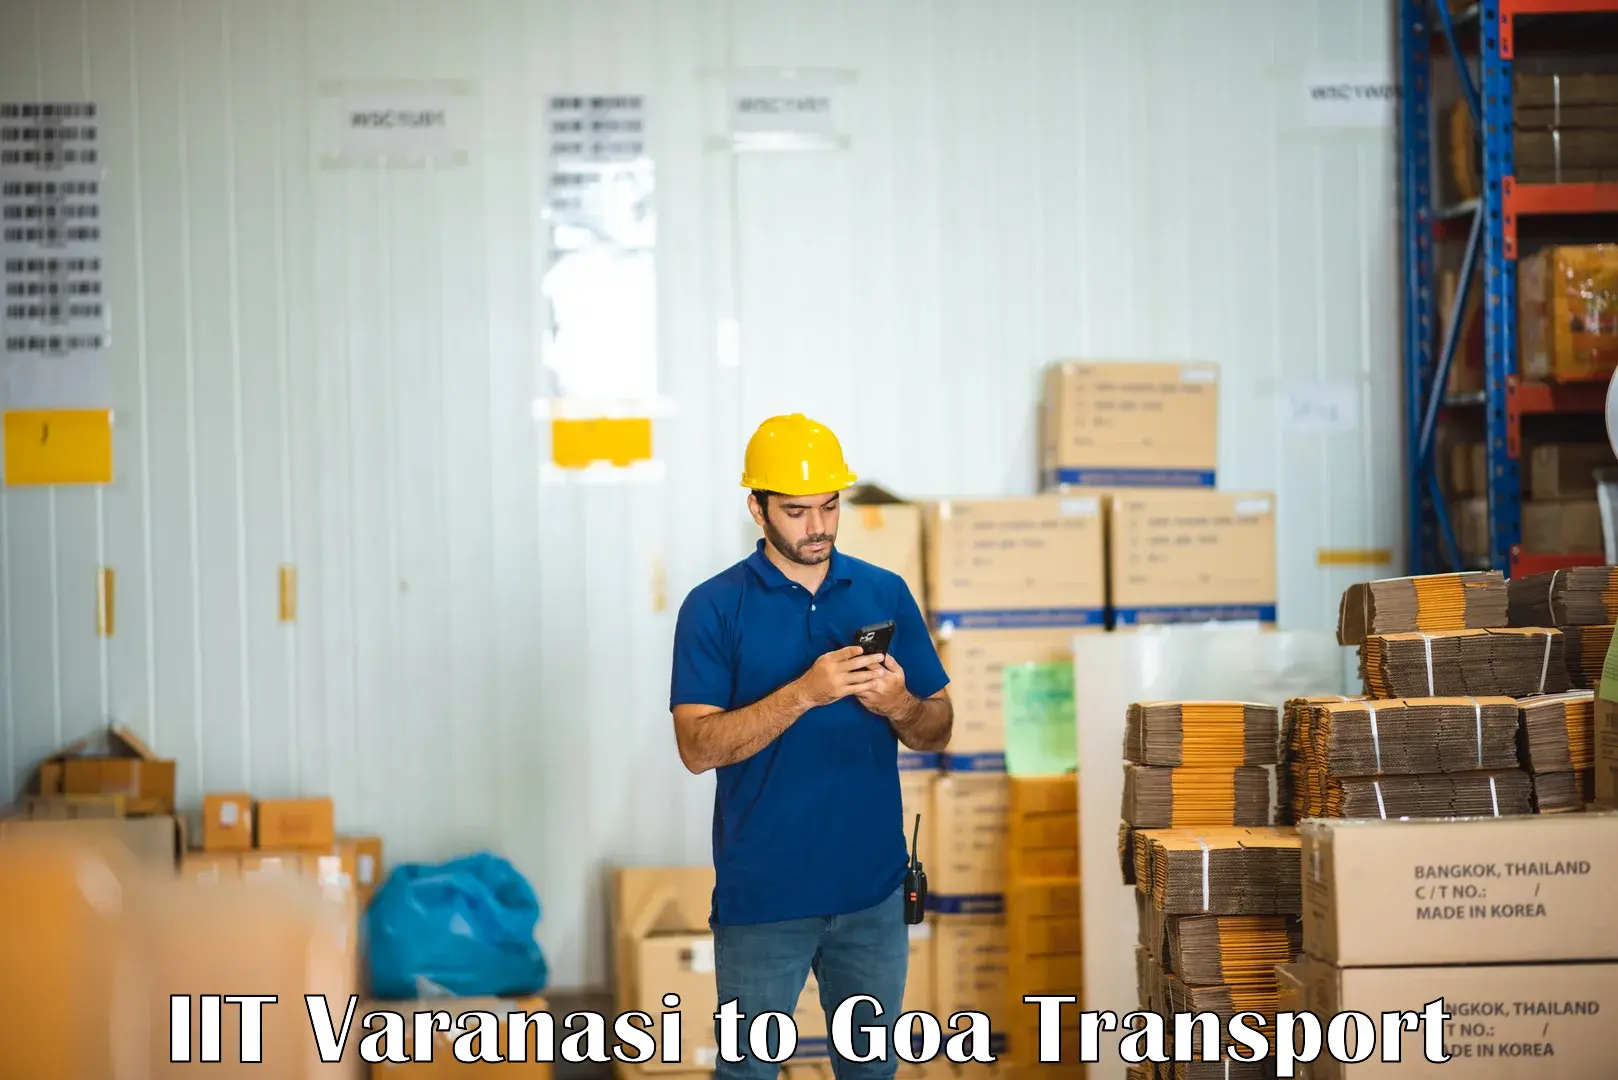 Delivery service IIT Varanasi to Ponda